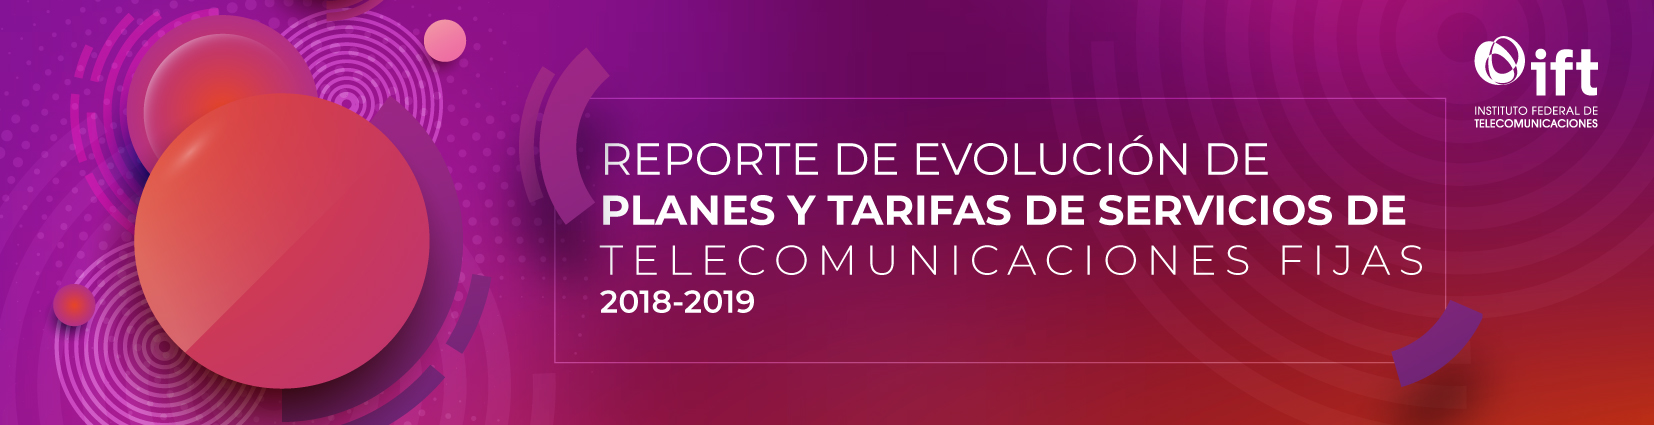 Reporte de Evolución de Planes y Tarifas de Servicios de Telecomunicaciones Fijas 2018-2019